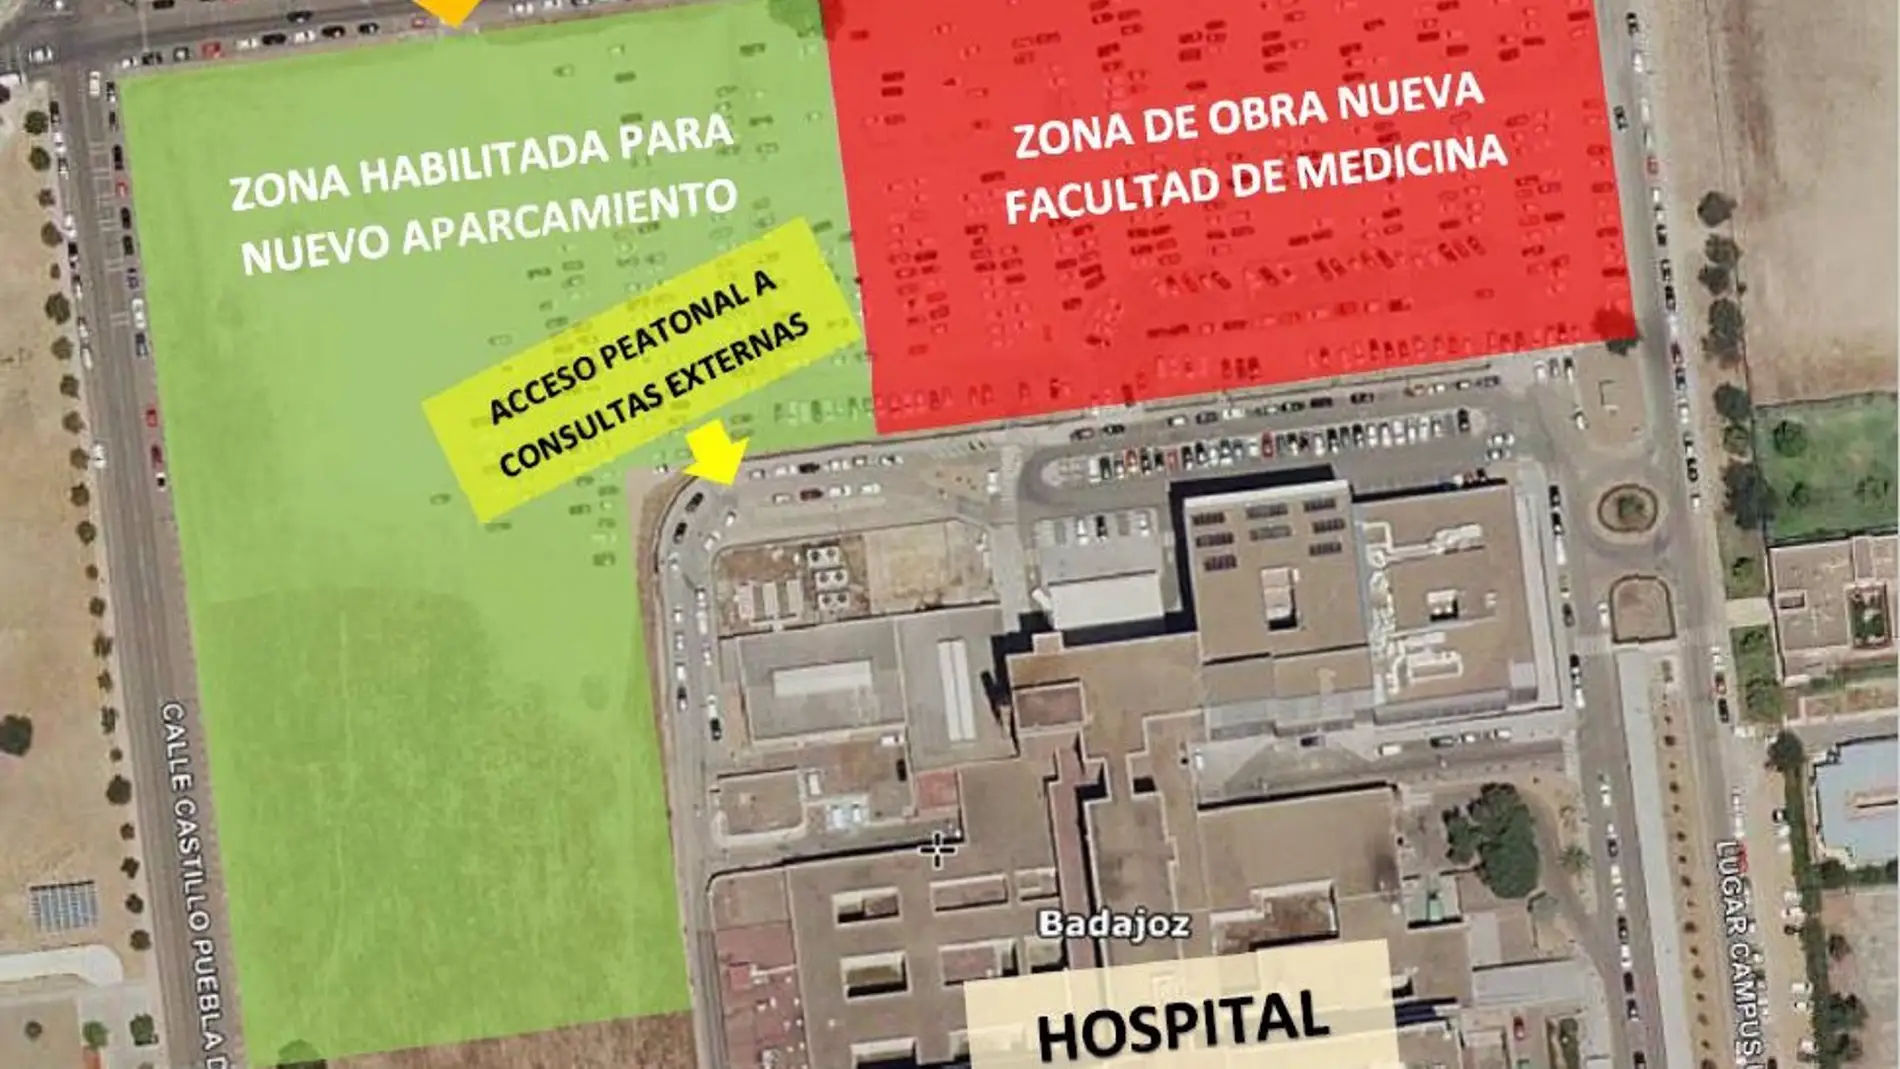 El Jueves arrancan las obras de la Nueva Facultad de Medicina de la UNEX en Badajoz